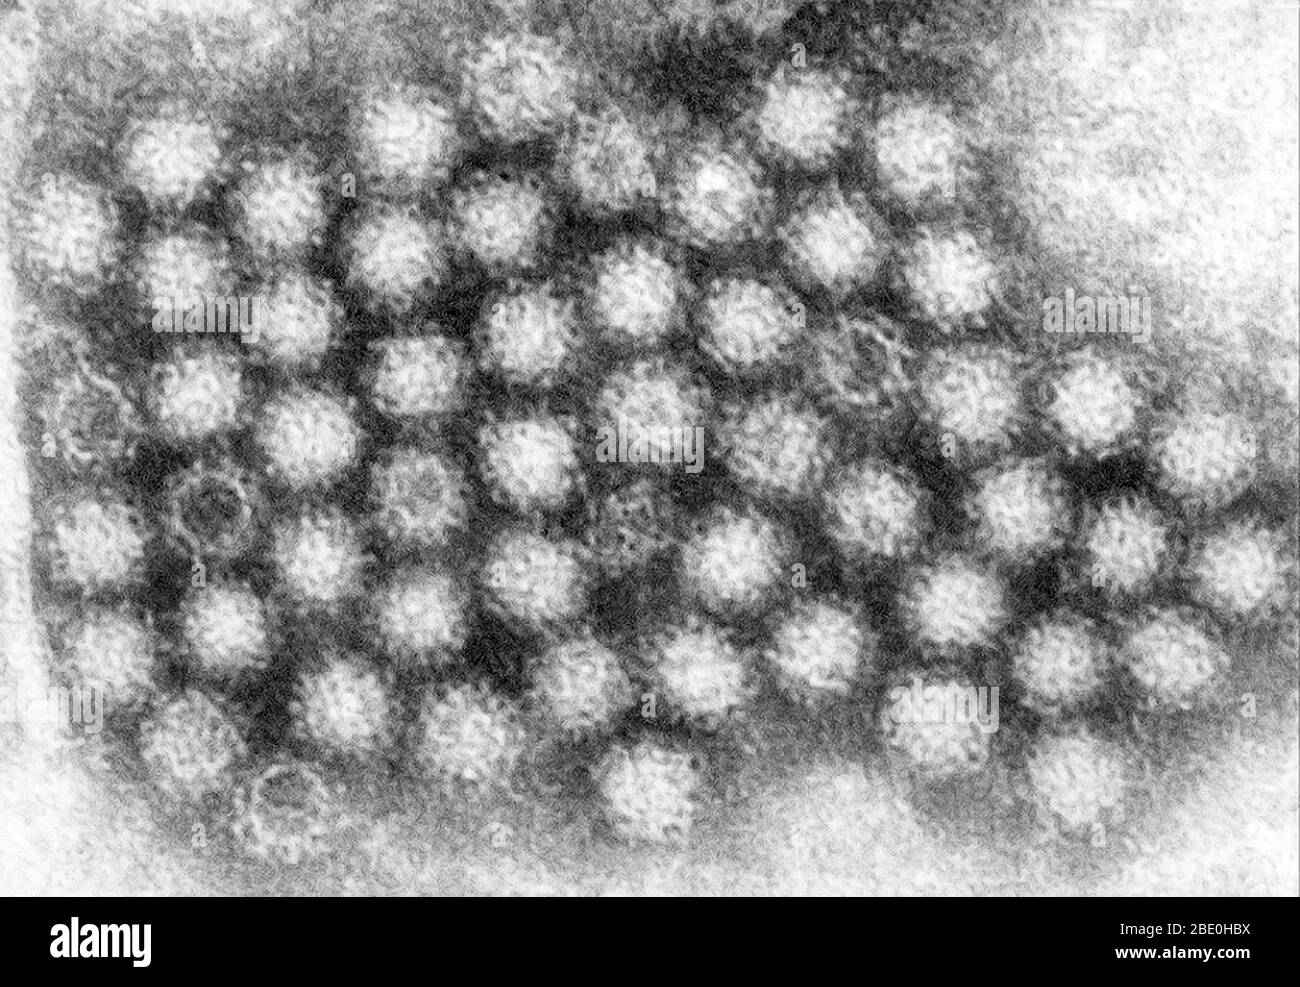 Este micrografo de electrones de transmisión (TEM) reveló parte de la morfología ultraestructural mostrada por los viriones del norovirus o partículas de virus. Los norovirus pertenecen al género Norovirus y a la familia Caliciviridae. Son un grupo de virus no envueltos, relacionados con ARN monocatenario, que causan gastroenteritis aguda en humanos. El norovirus fue aprobado recientemente como el nombre oficial del género para el grupo de virus descrito provisionalmente como virus similares a Norwalk (NLV). Foto de stock